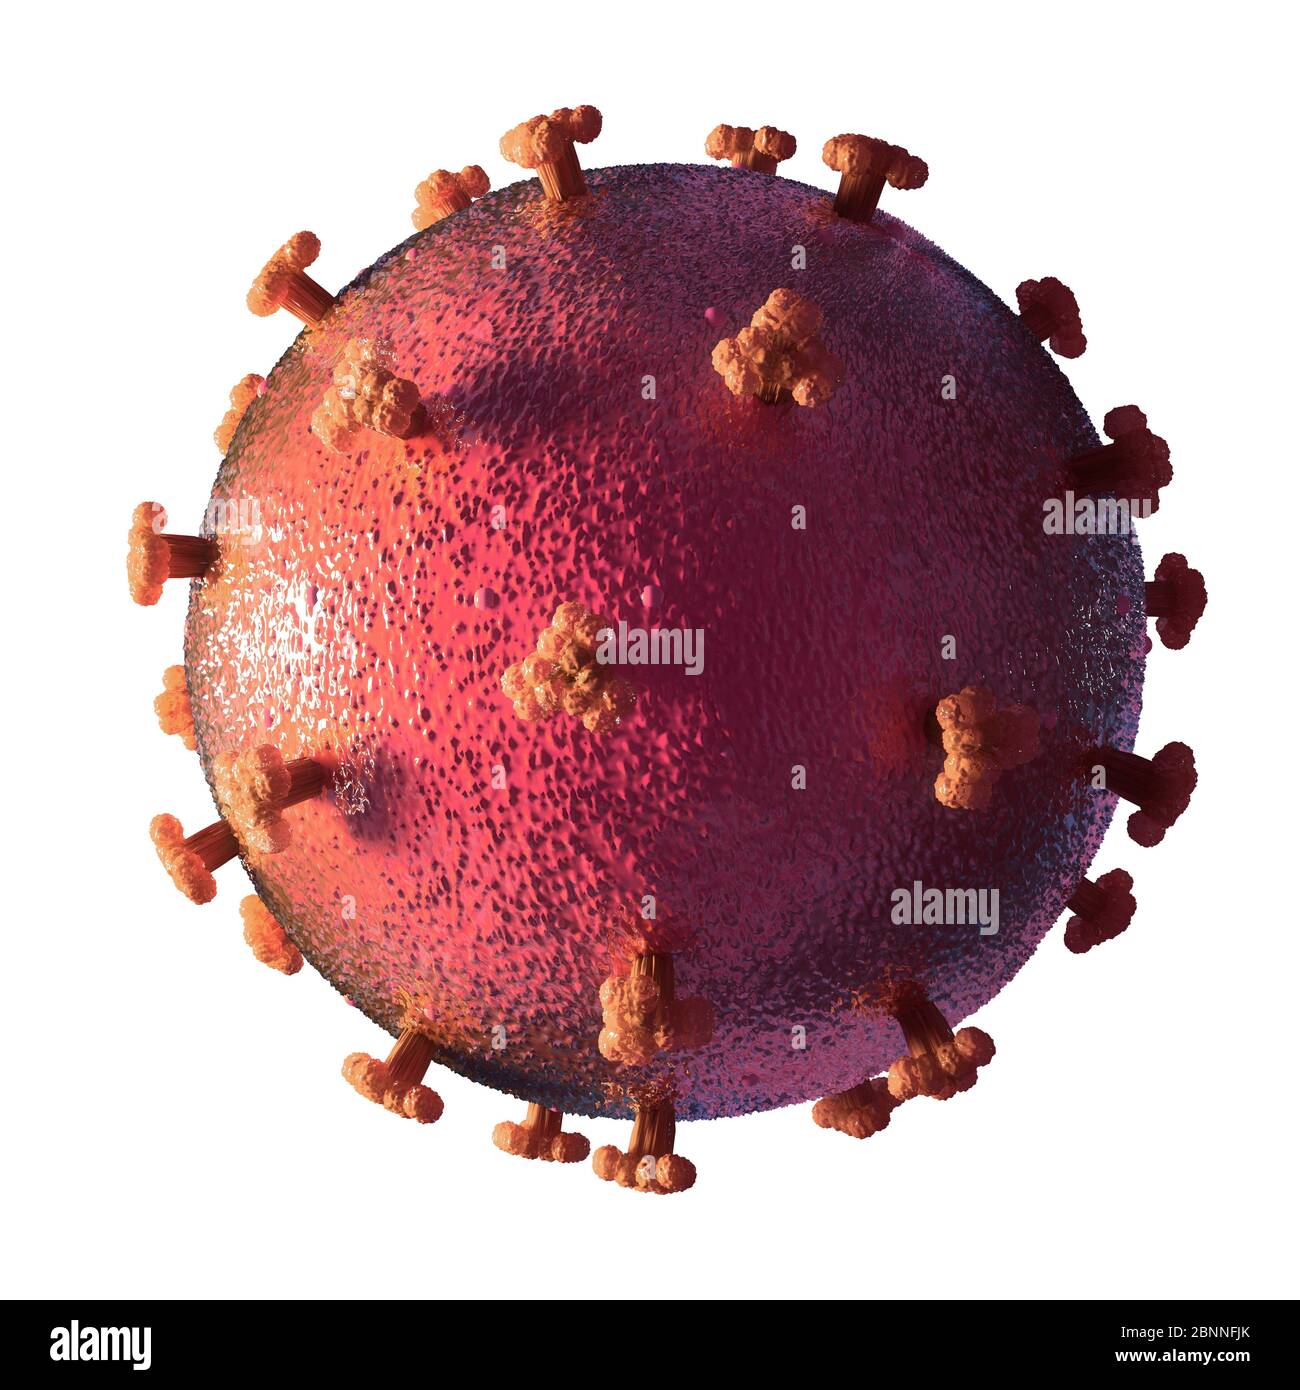 Abbildung eines Coronavirus, der Ursache der neuen Krankheit covid-19. Diese Krankheit wurde erstmals im Dezember 2019 in Wuhan, China, entdeckt. Sie ist ansteckend und hat sich seitdem schnell auf der ganzen Welt ausgebreitet. Die Krankheit verursacht Fieber, Husten und Atemnot und kann in einigen Fällen zu einer tödlichen Lungenentzündung führen. SARS-CoV-2 ist ein RNA-Virus, das Proteinspitzen verwendet, um Zugang zu den Wirtszellen zu gewinnen. Stockfoto